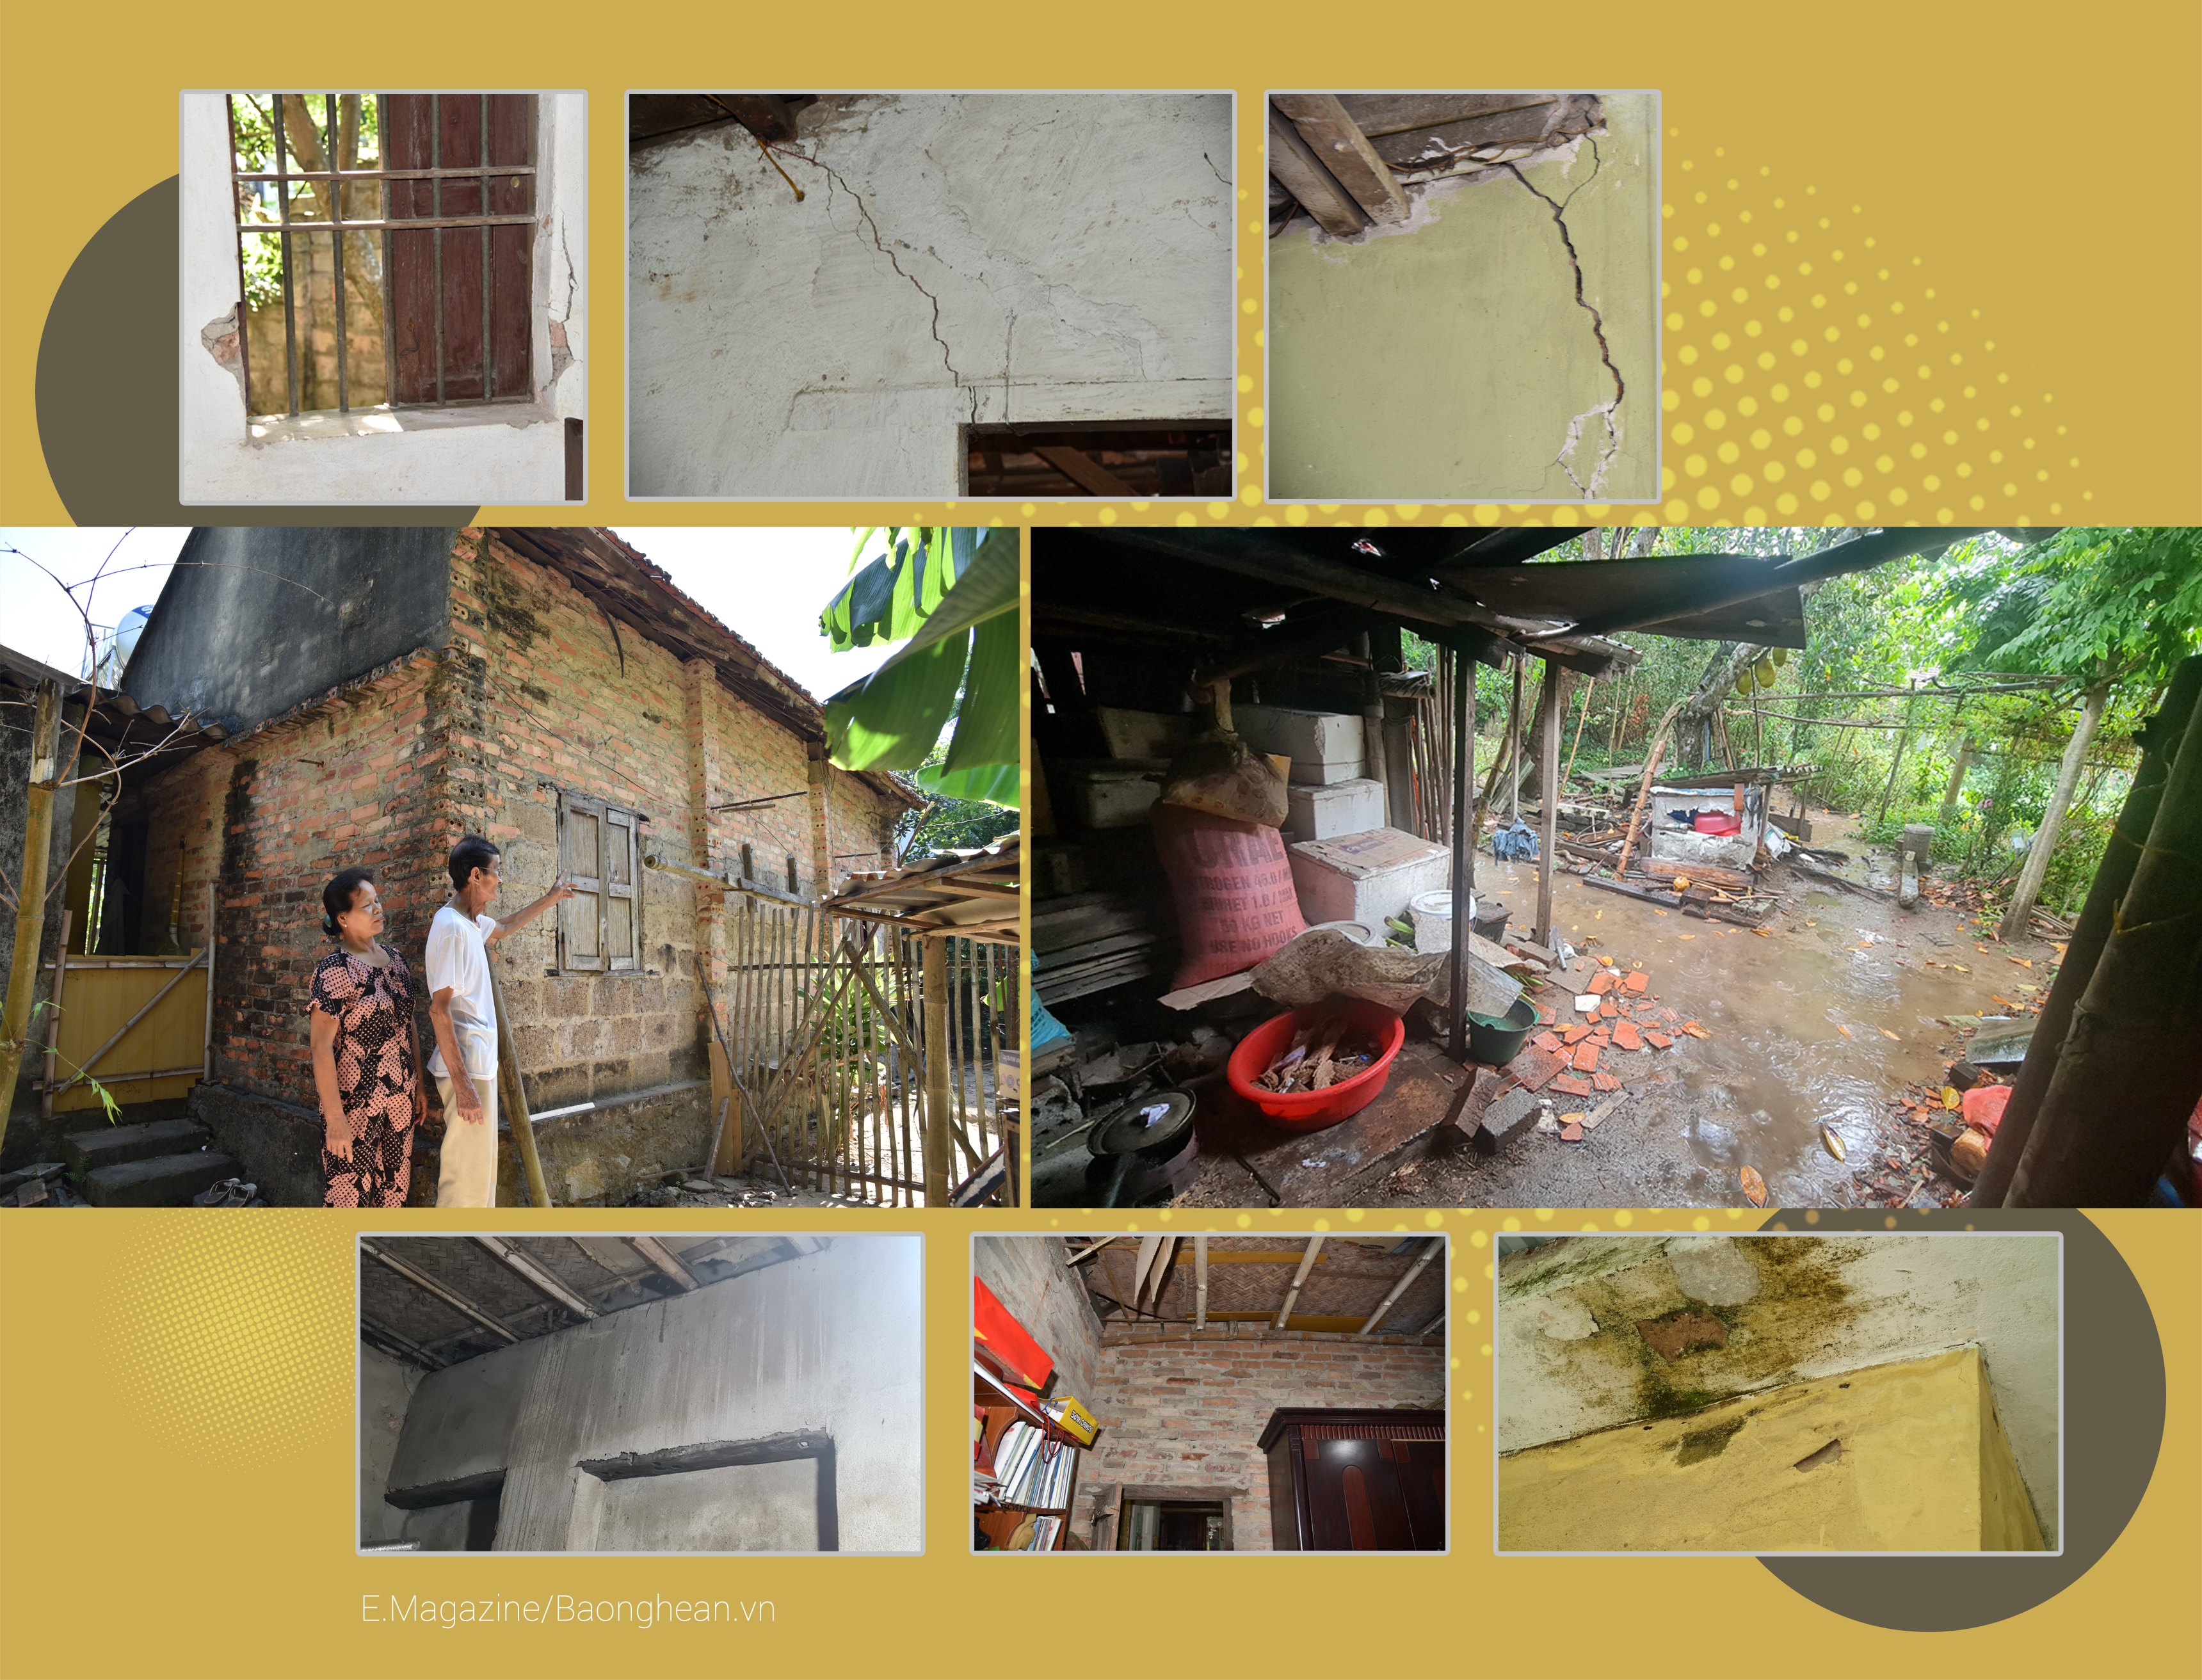 Căn nhà của vợ chồng ông Nguyễn Hữu Thân xây từ năm 1982 trong tình trạng không da trát phía ngoài, đã xuống cấp nghiêm trọng; Trong nhà, có nhiều vết nứt tường, vôi vữa bong tróc do hàng chục năm không được phép sửa chữa; khu vực vườn rau ngập nước chỉ sau trận mưa chừng 15 phút.